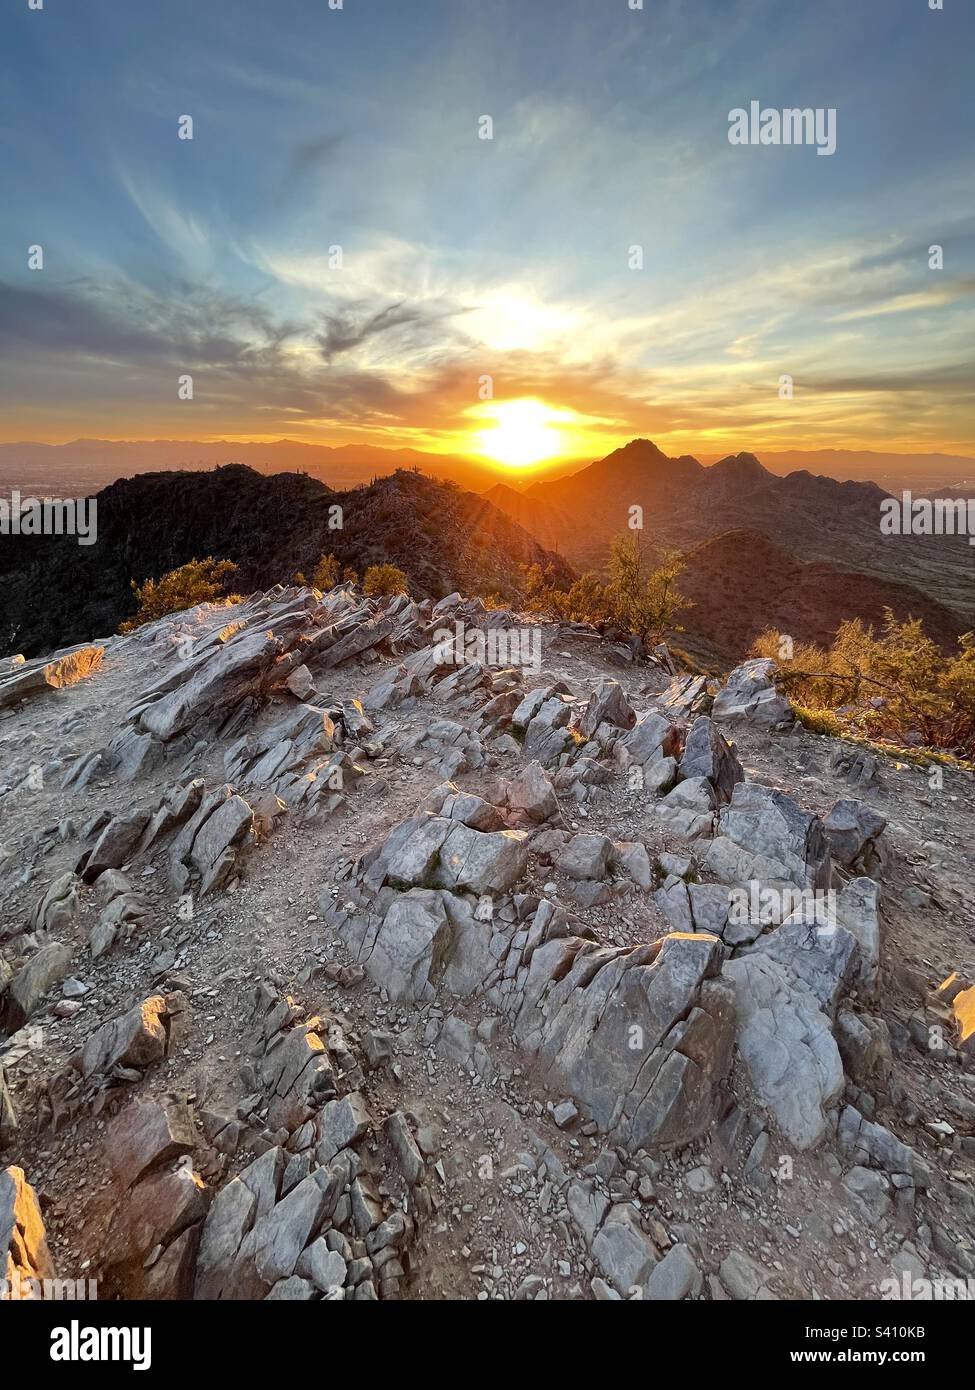 Le coucher de soleil doré à grand angle envoie de la lumière entre les pics de Phoenix Mountain Preserve, se faisant japper des rochers inclinés de Two bit Peak et plaçant la frange des buissons créosotes aglow, Scottsdale AZ Banque D'Images